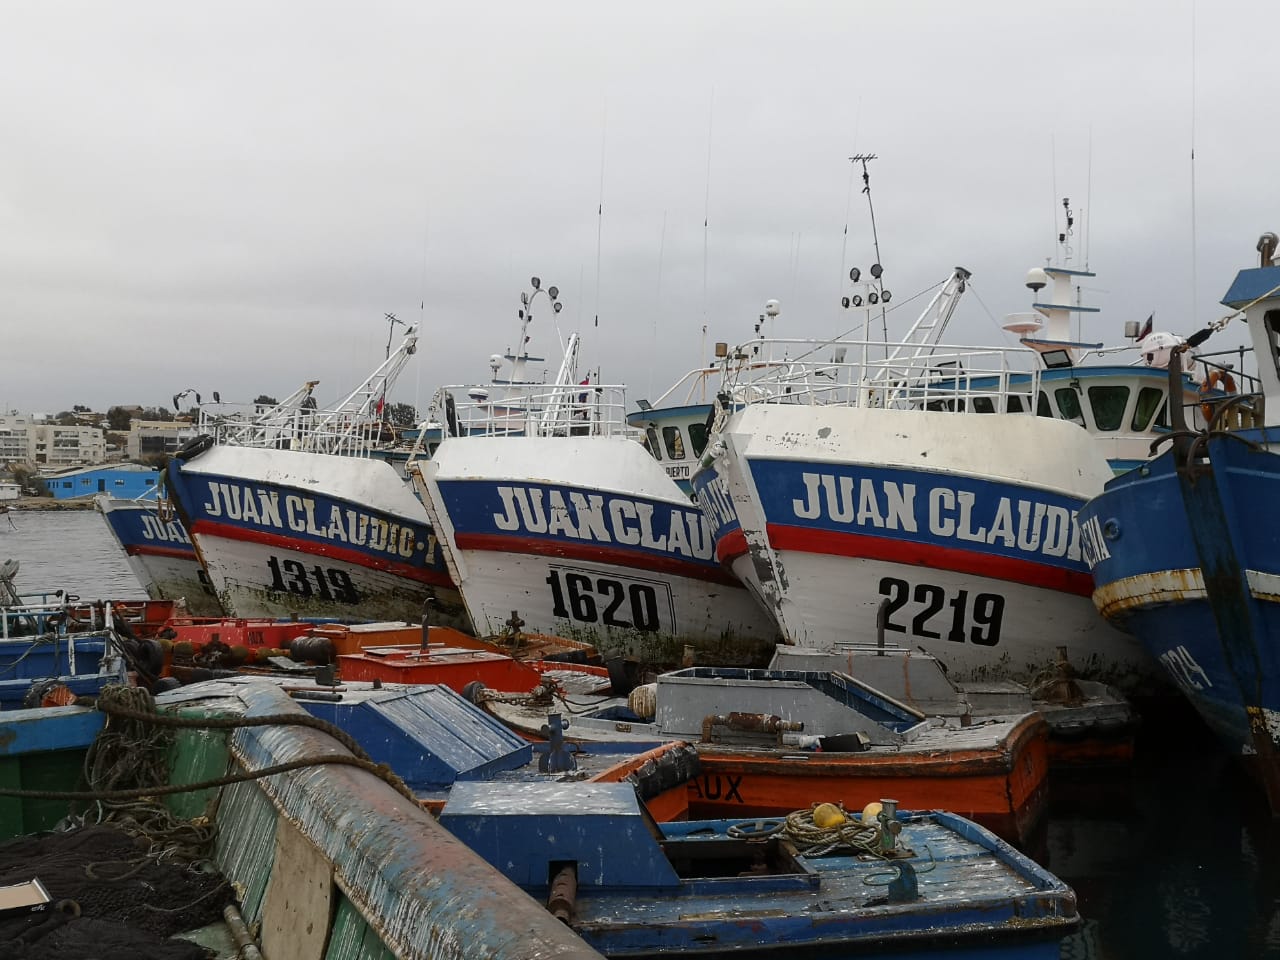 Pescadores de la macrozona norte denuncian Cartel de la flota Albacorera de la zona centro-sur